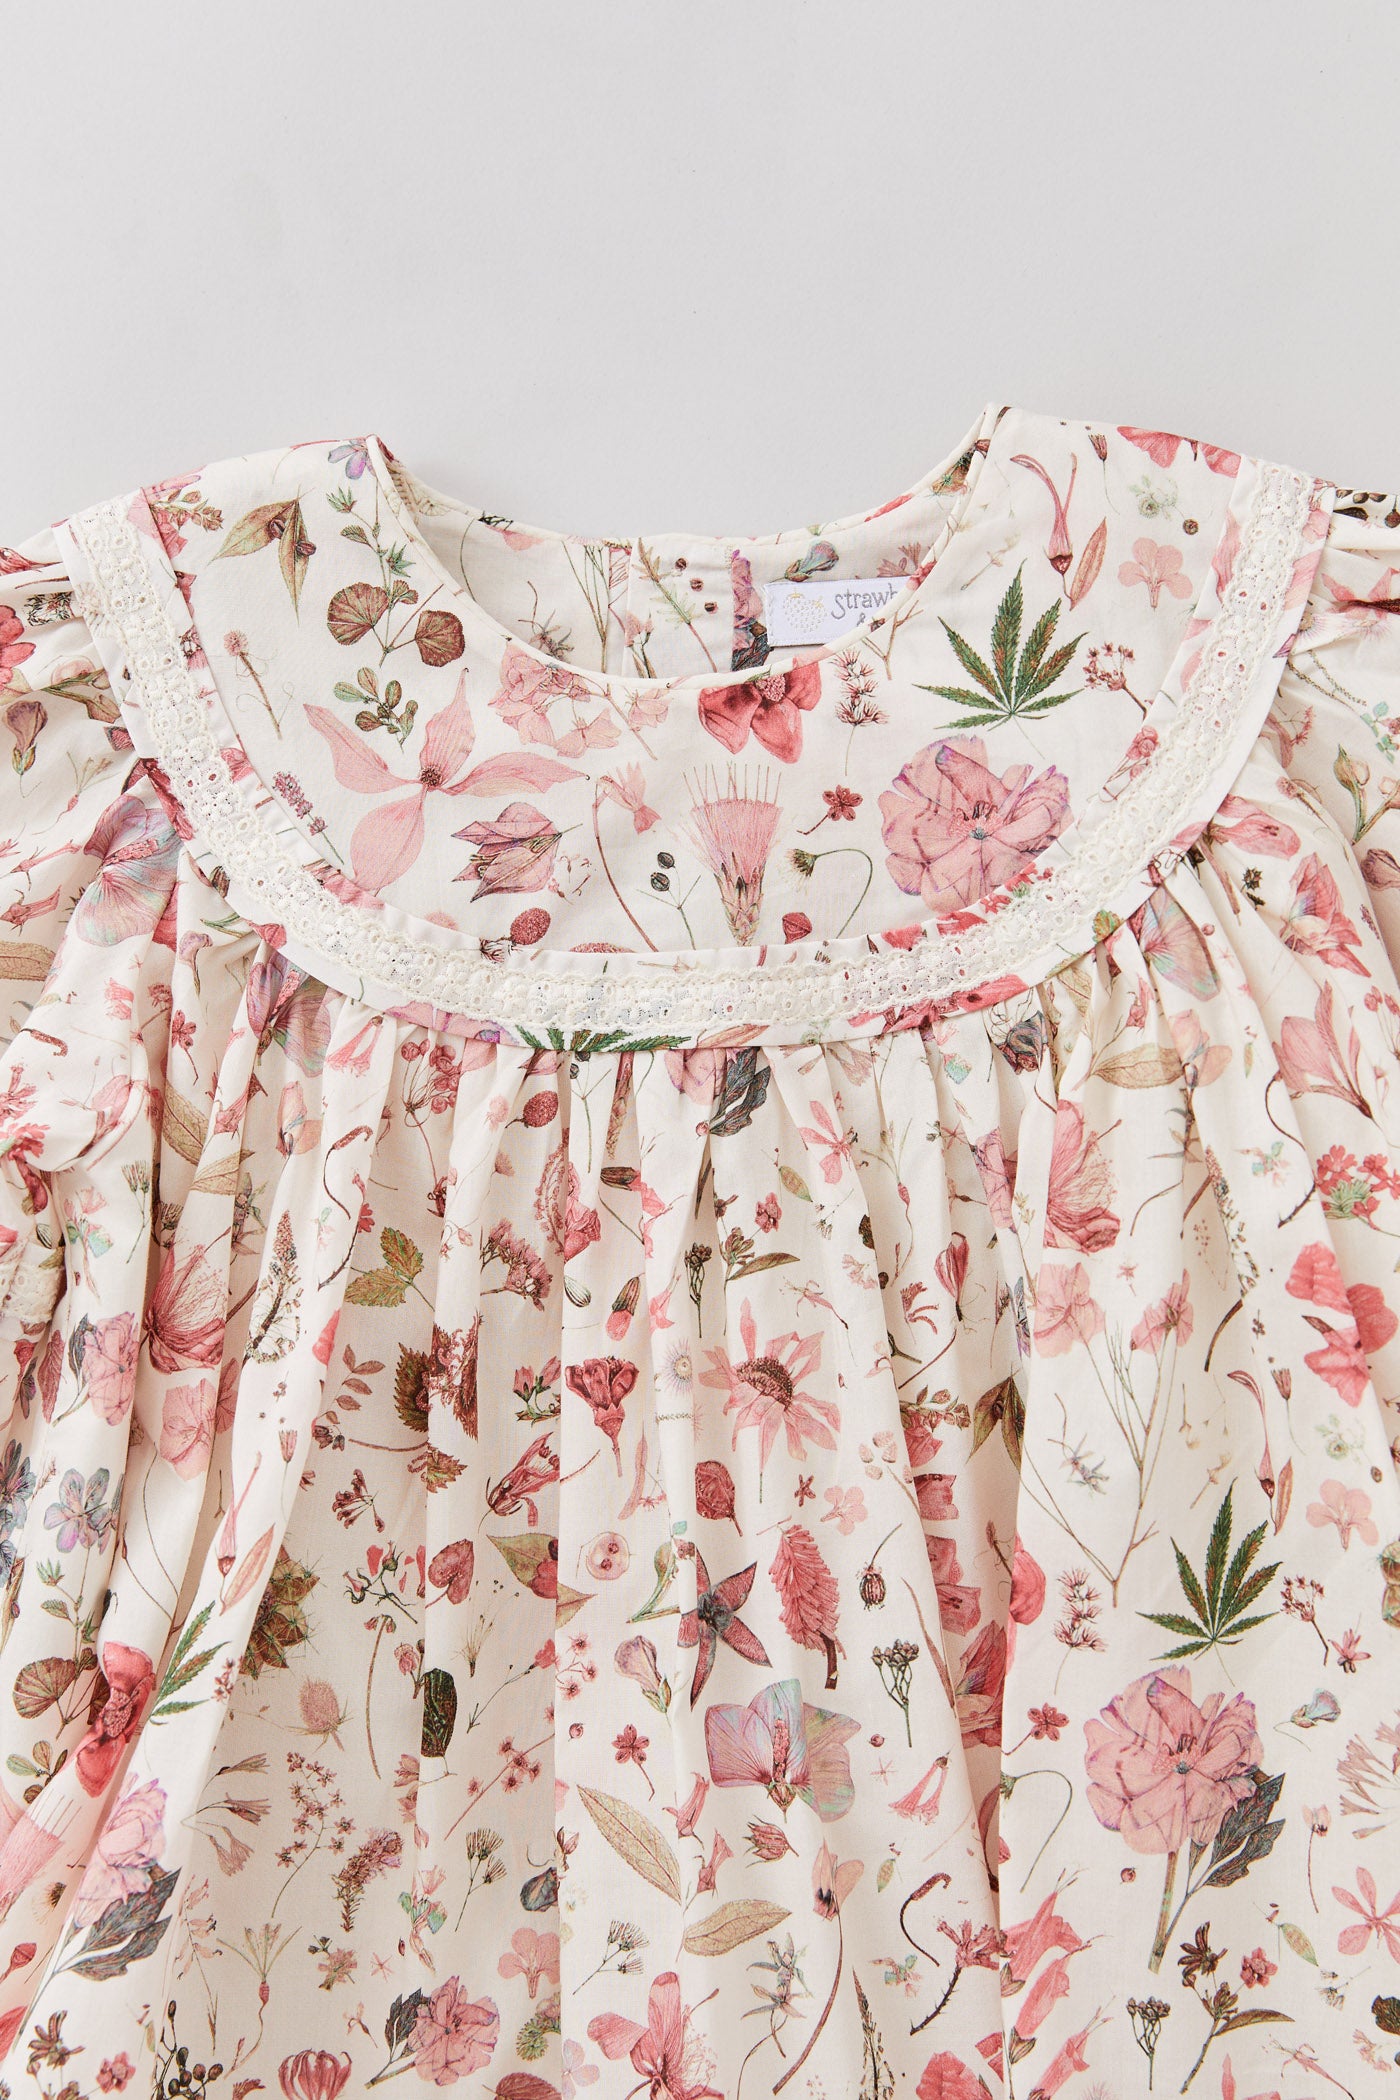 Plumcake Long Sleeve Dress in Marlow Floral Print - Designed by Ingrid Lewis - Strawberries & Cream